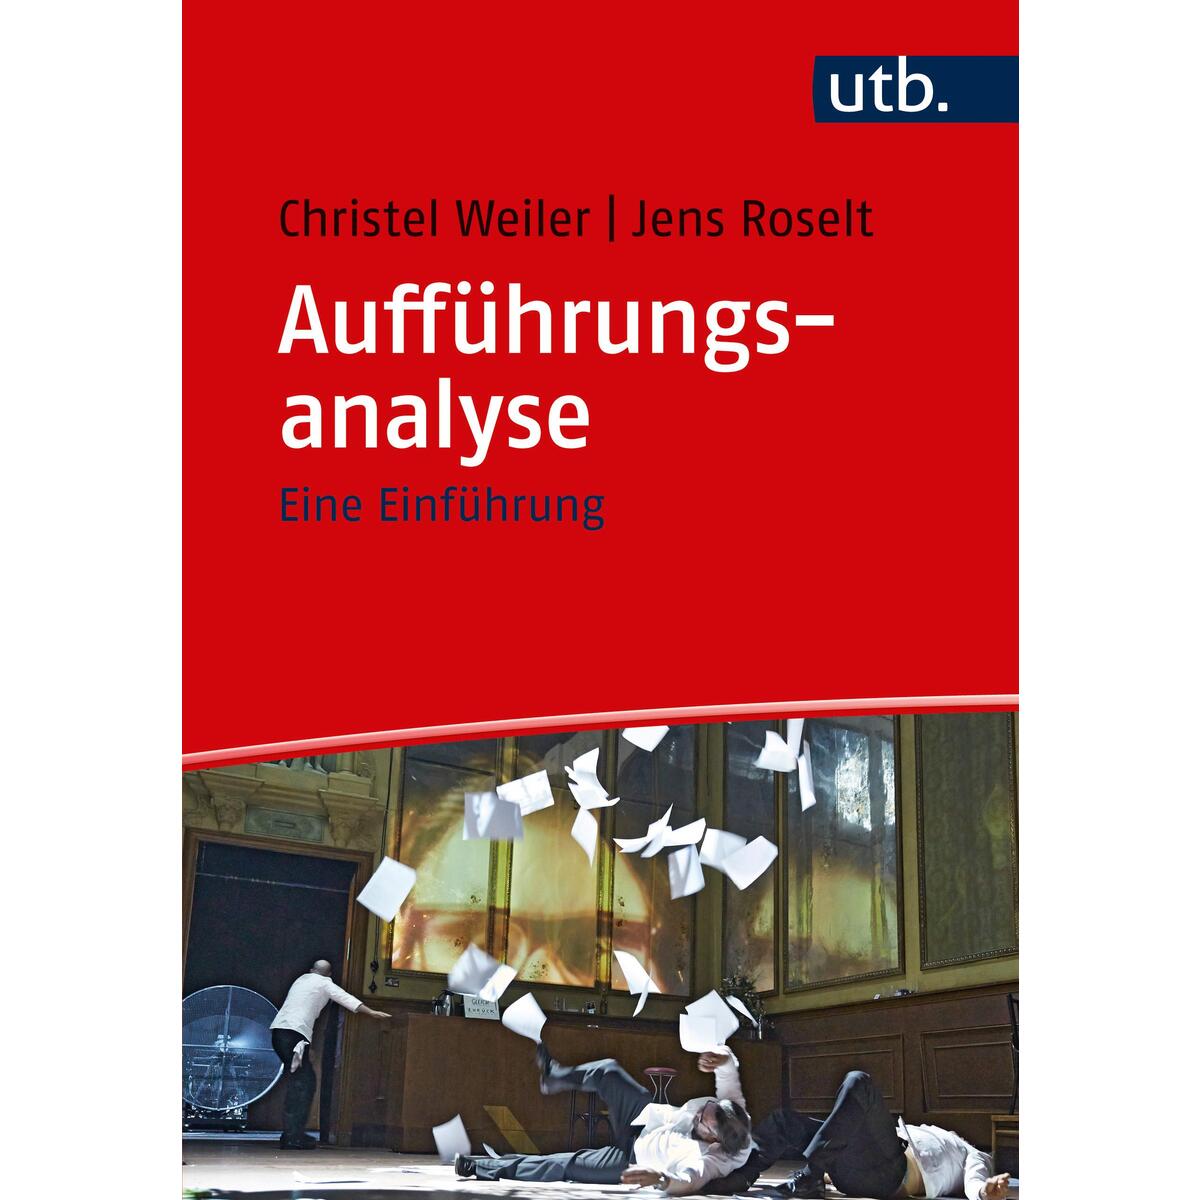 Aufführungsanalyse von UTB GmbH